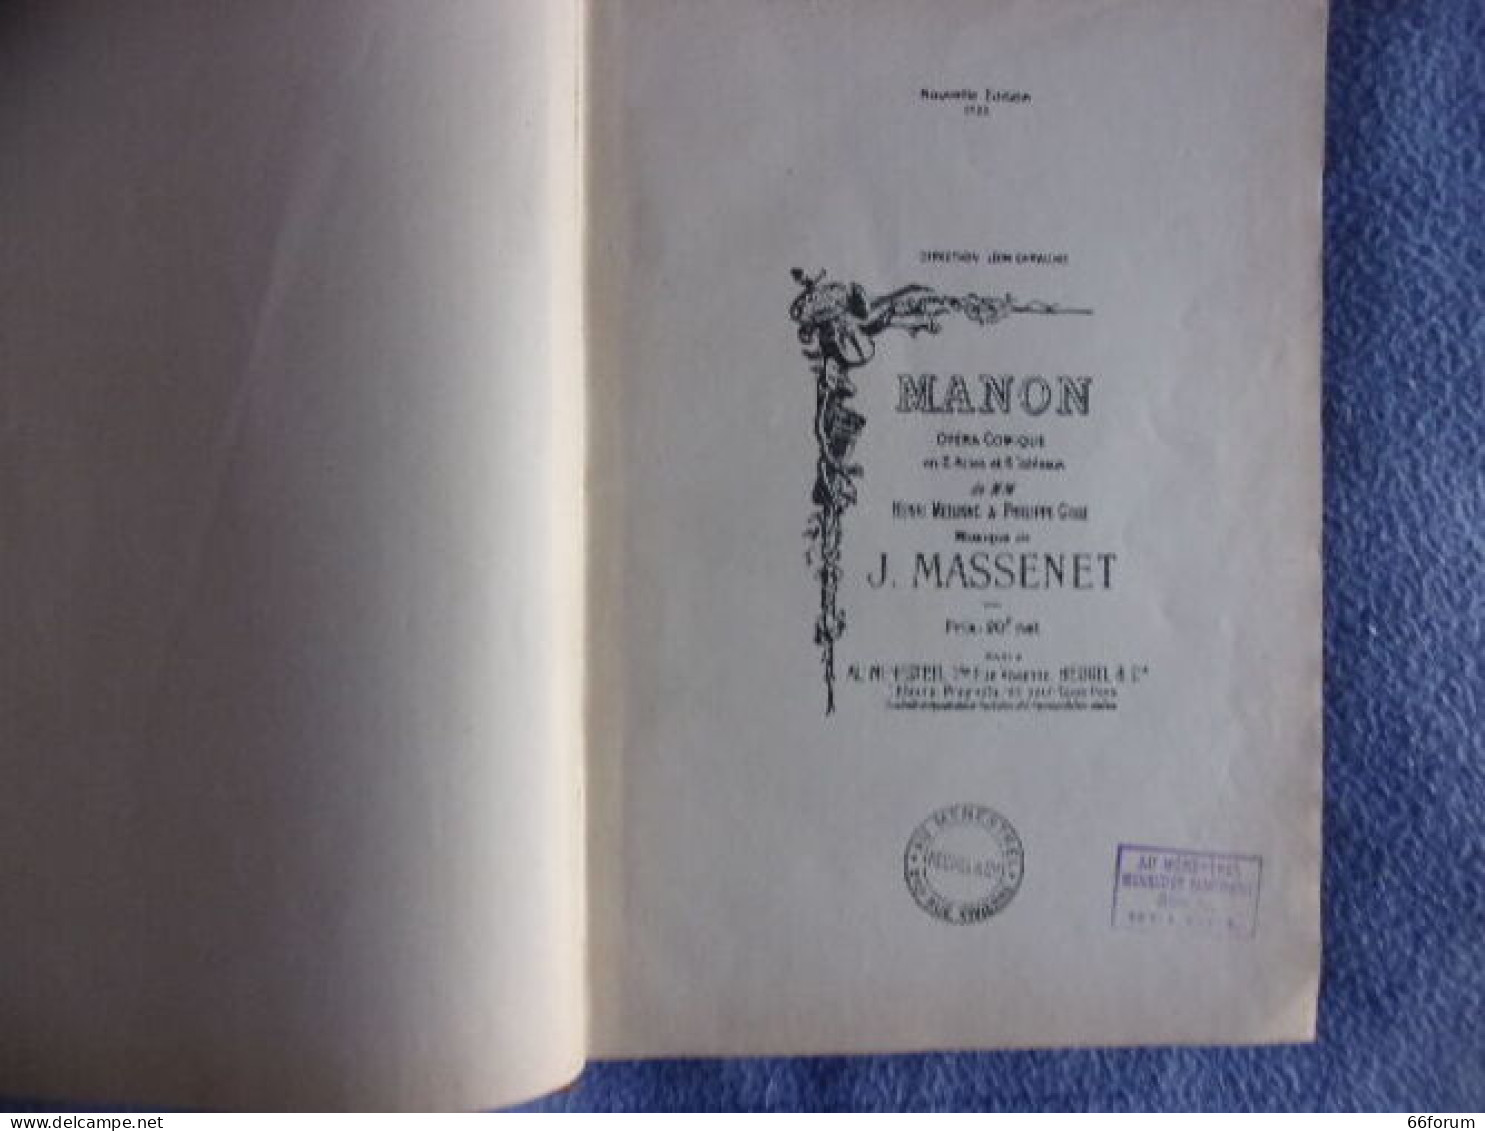 Manon - Musik